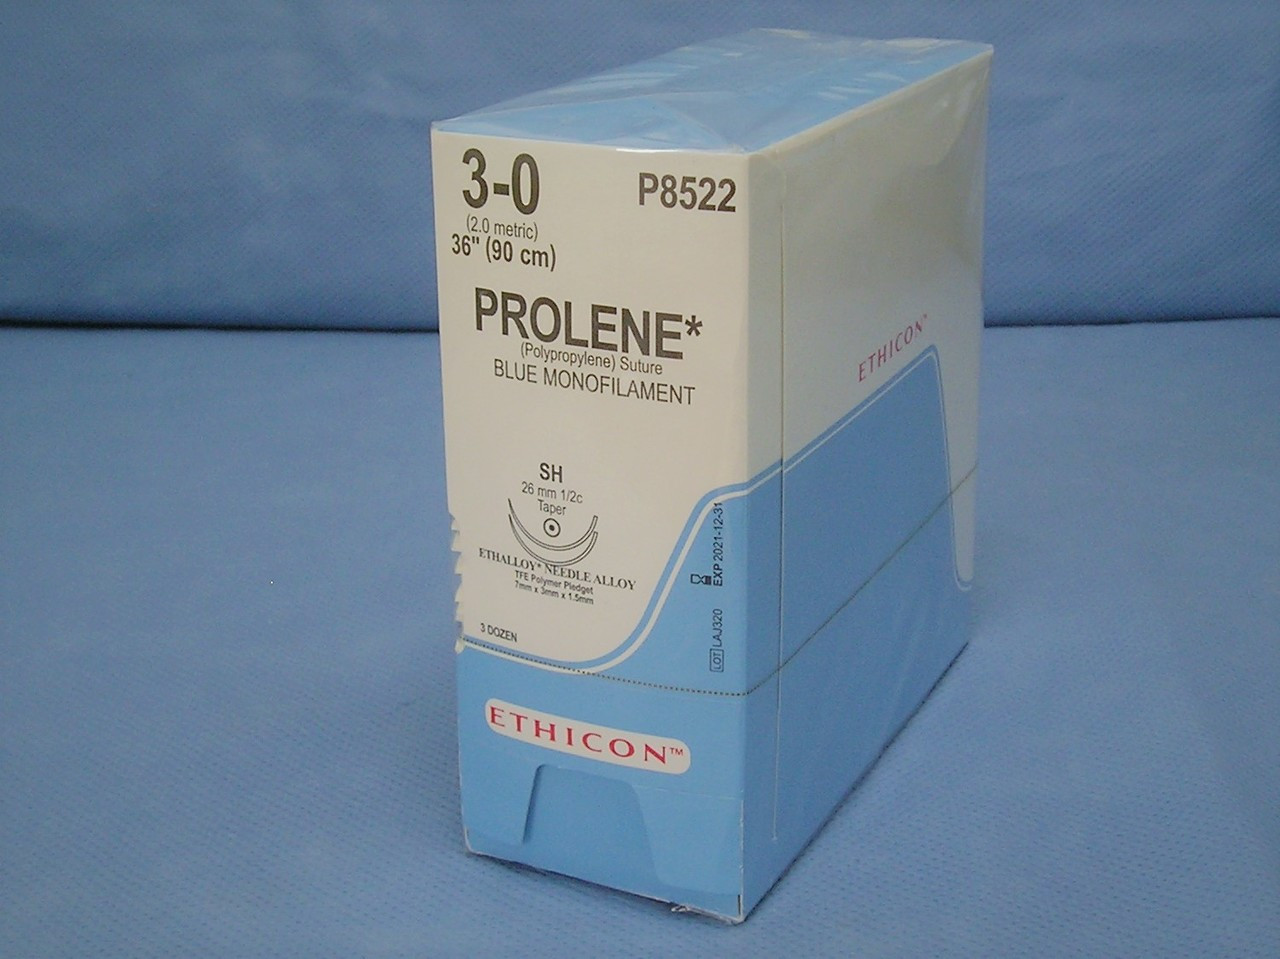 Ethicon P8522, Prolene Suture, 3-0, 36